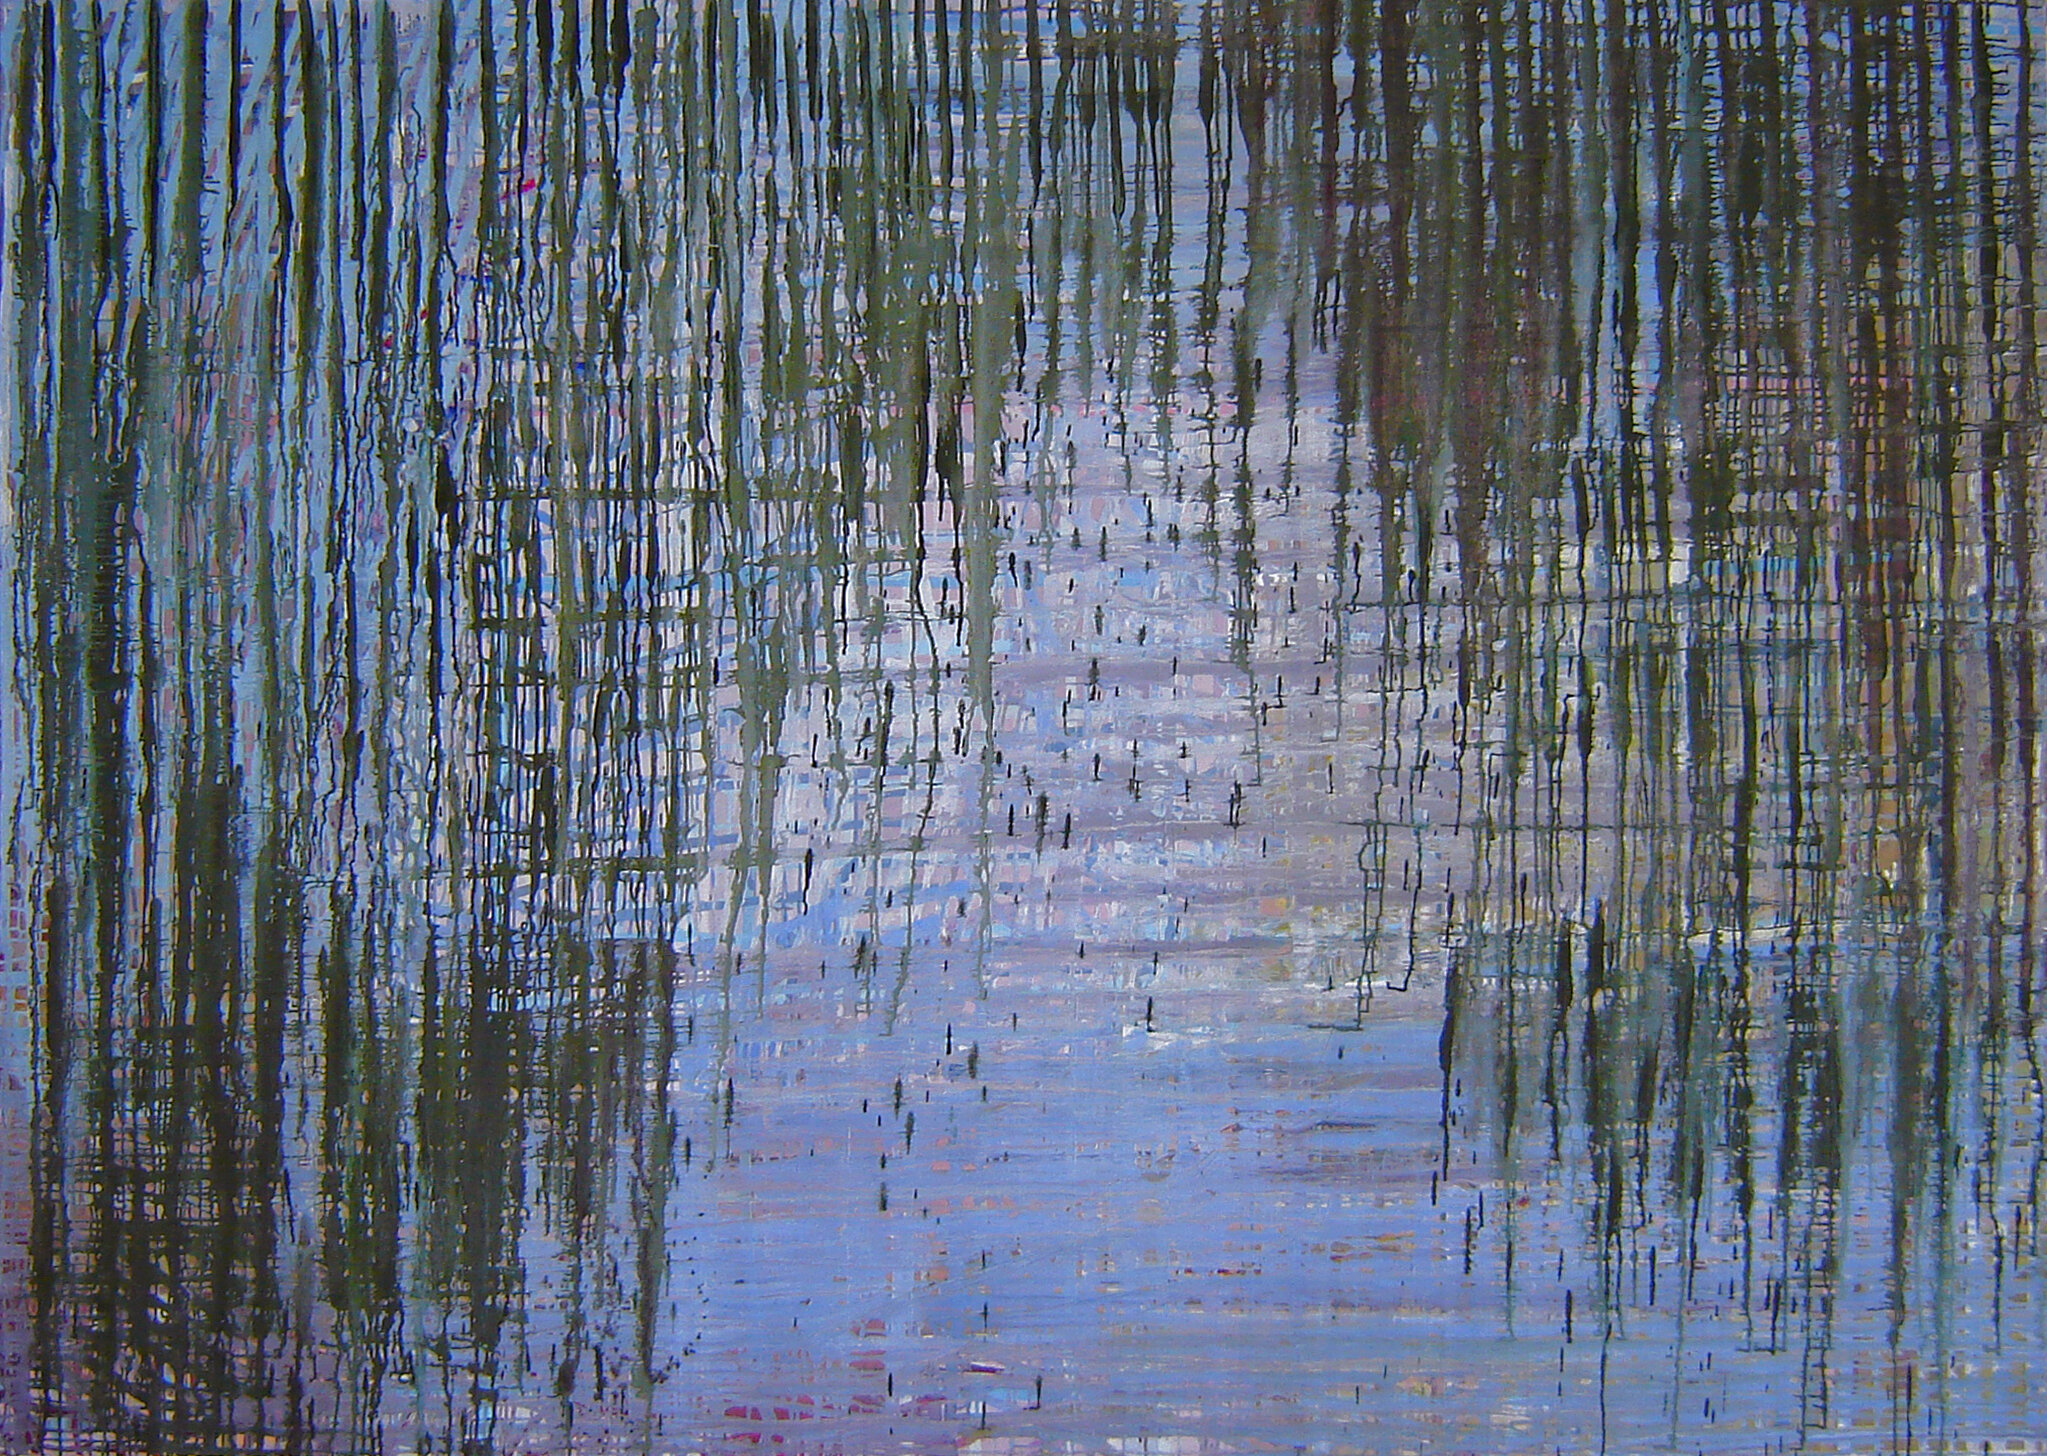 Willows on the water by Mariël van den Eerenbeemt